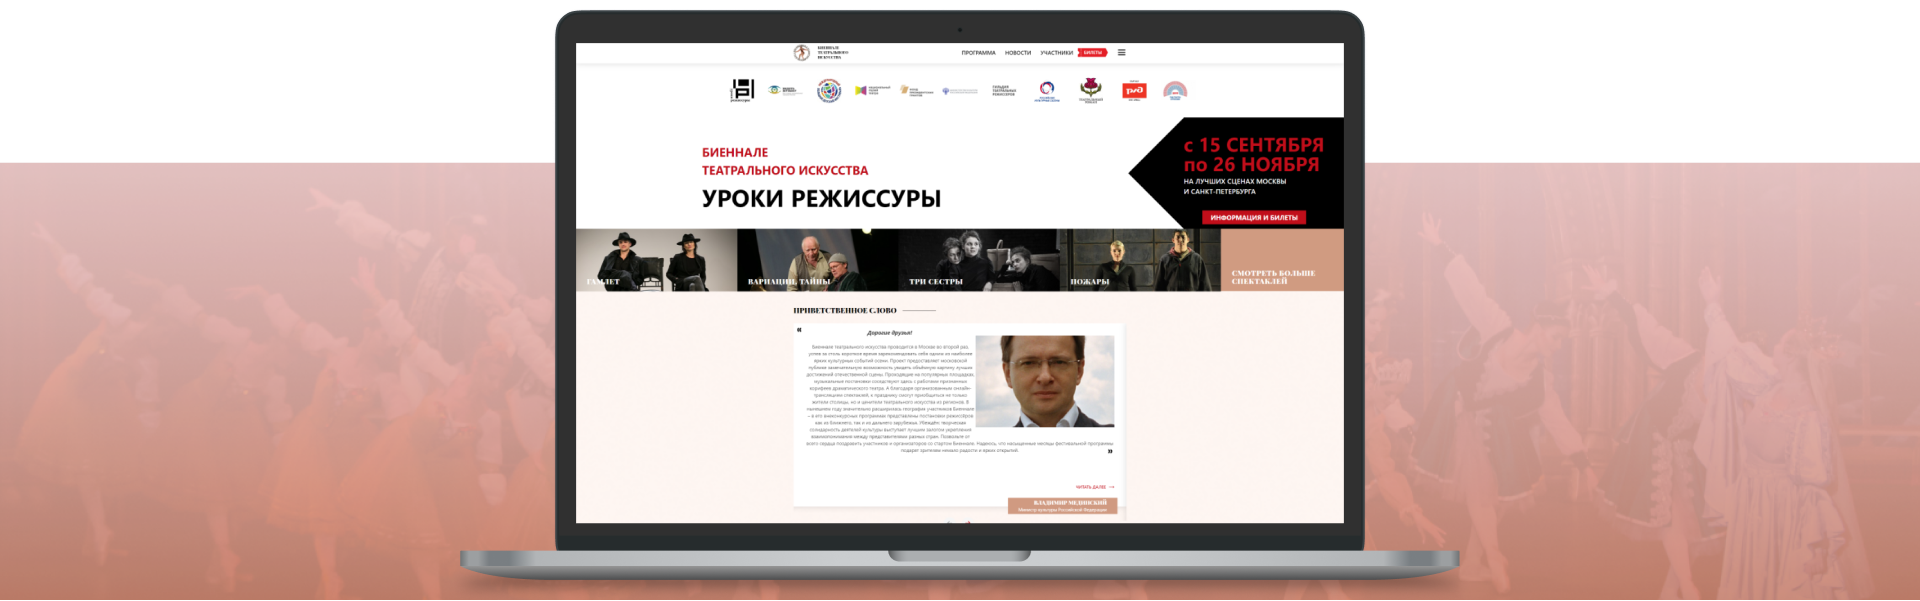 Сайт theaterbiennale.ru